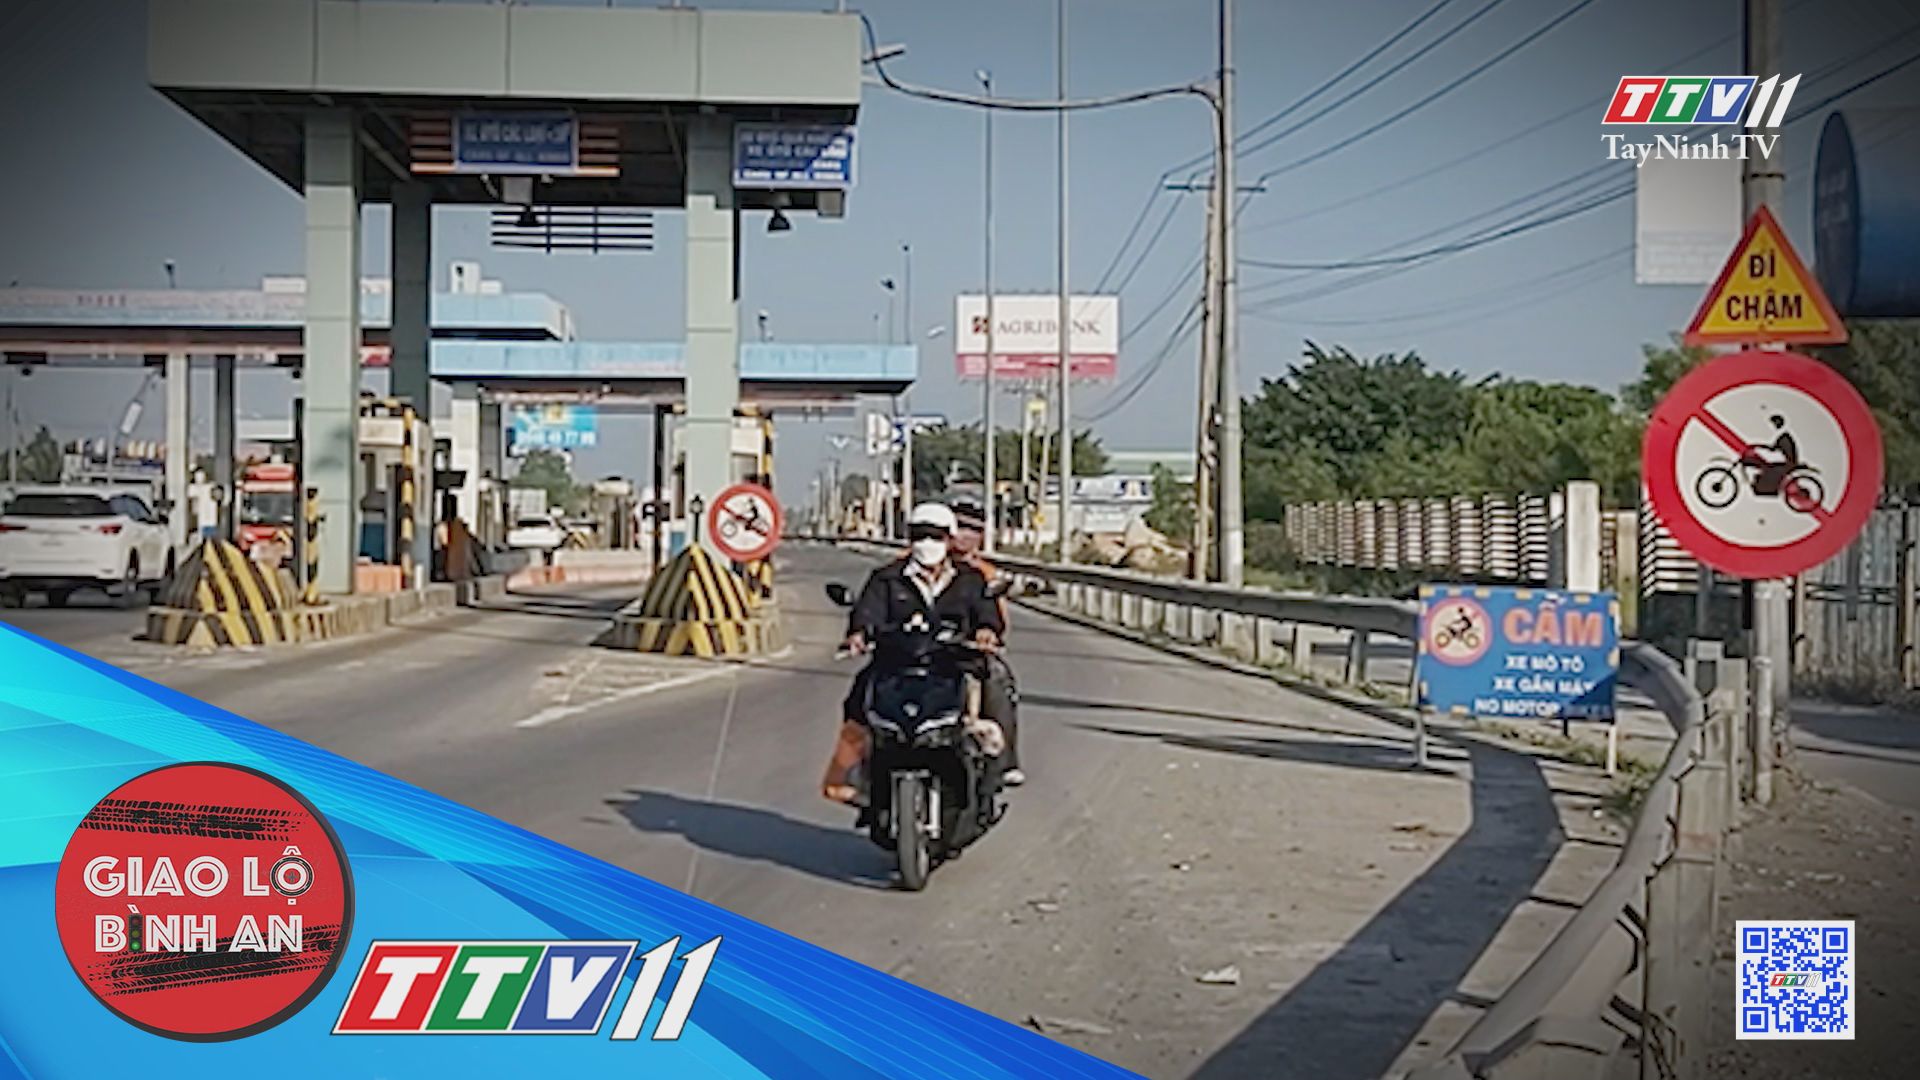 Chạy xe máy vào cao tốc và những hậu quả khôn lường | Giao lộ bình an | TayNinhTV